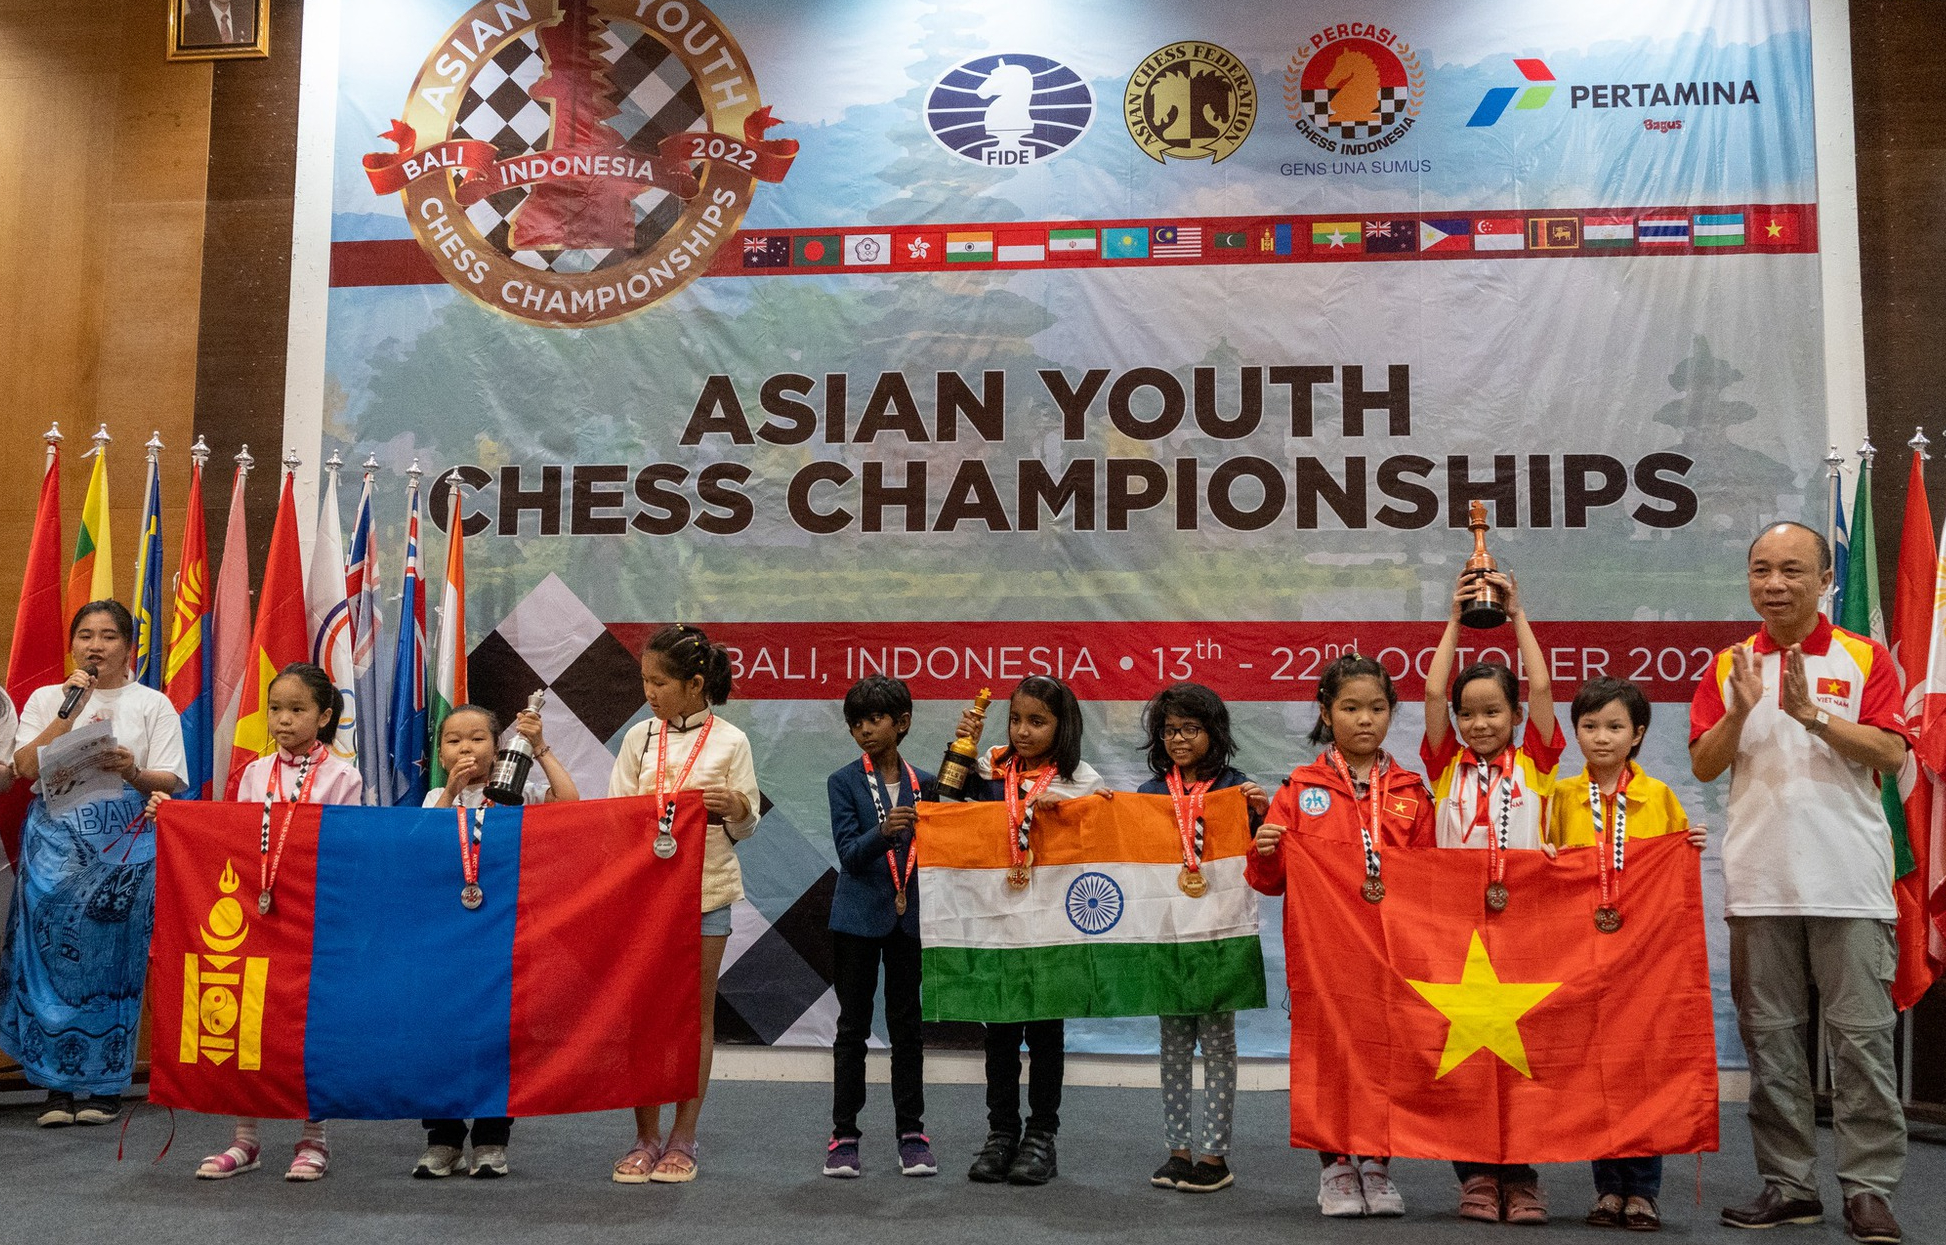 Những tài năng trẻ chơi cờ vua trên khắp Châu Á đang nổi bật với sự xuất hiện của những tay đánh có khả năng vượt qua cả các vị vua cờ già dặn. Xem ảnh để khám phá thêm về những trận đấu đầy kịch tính và sự đổi mới trong thế giới cờ vua hiện đại.